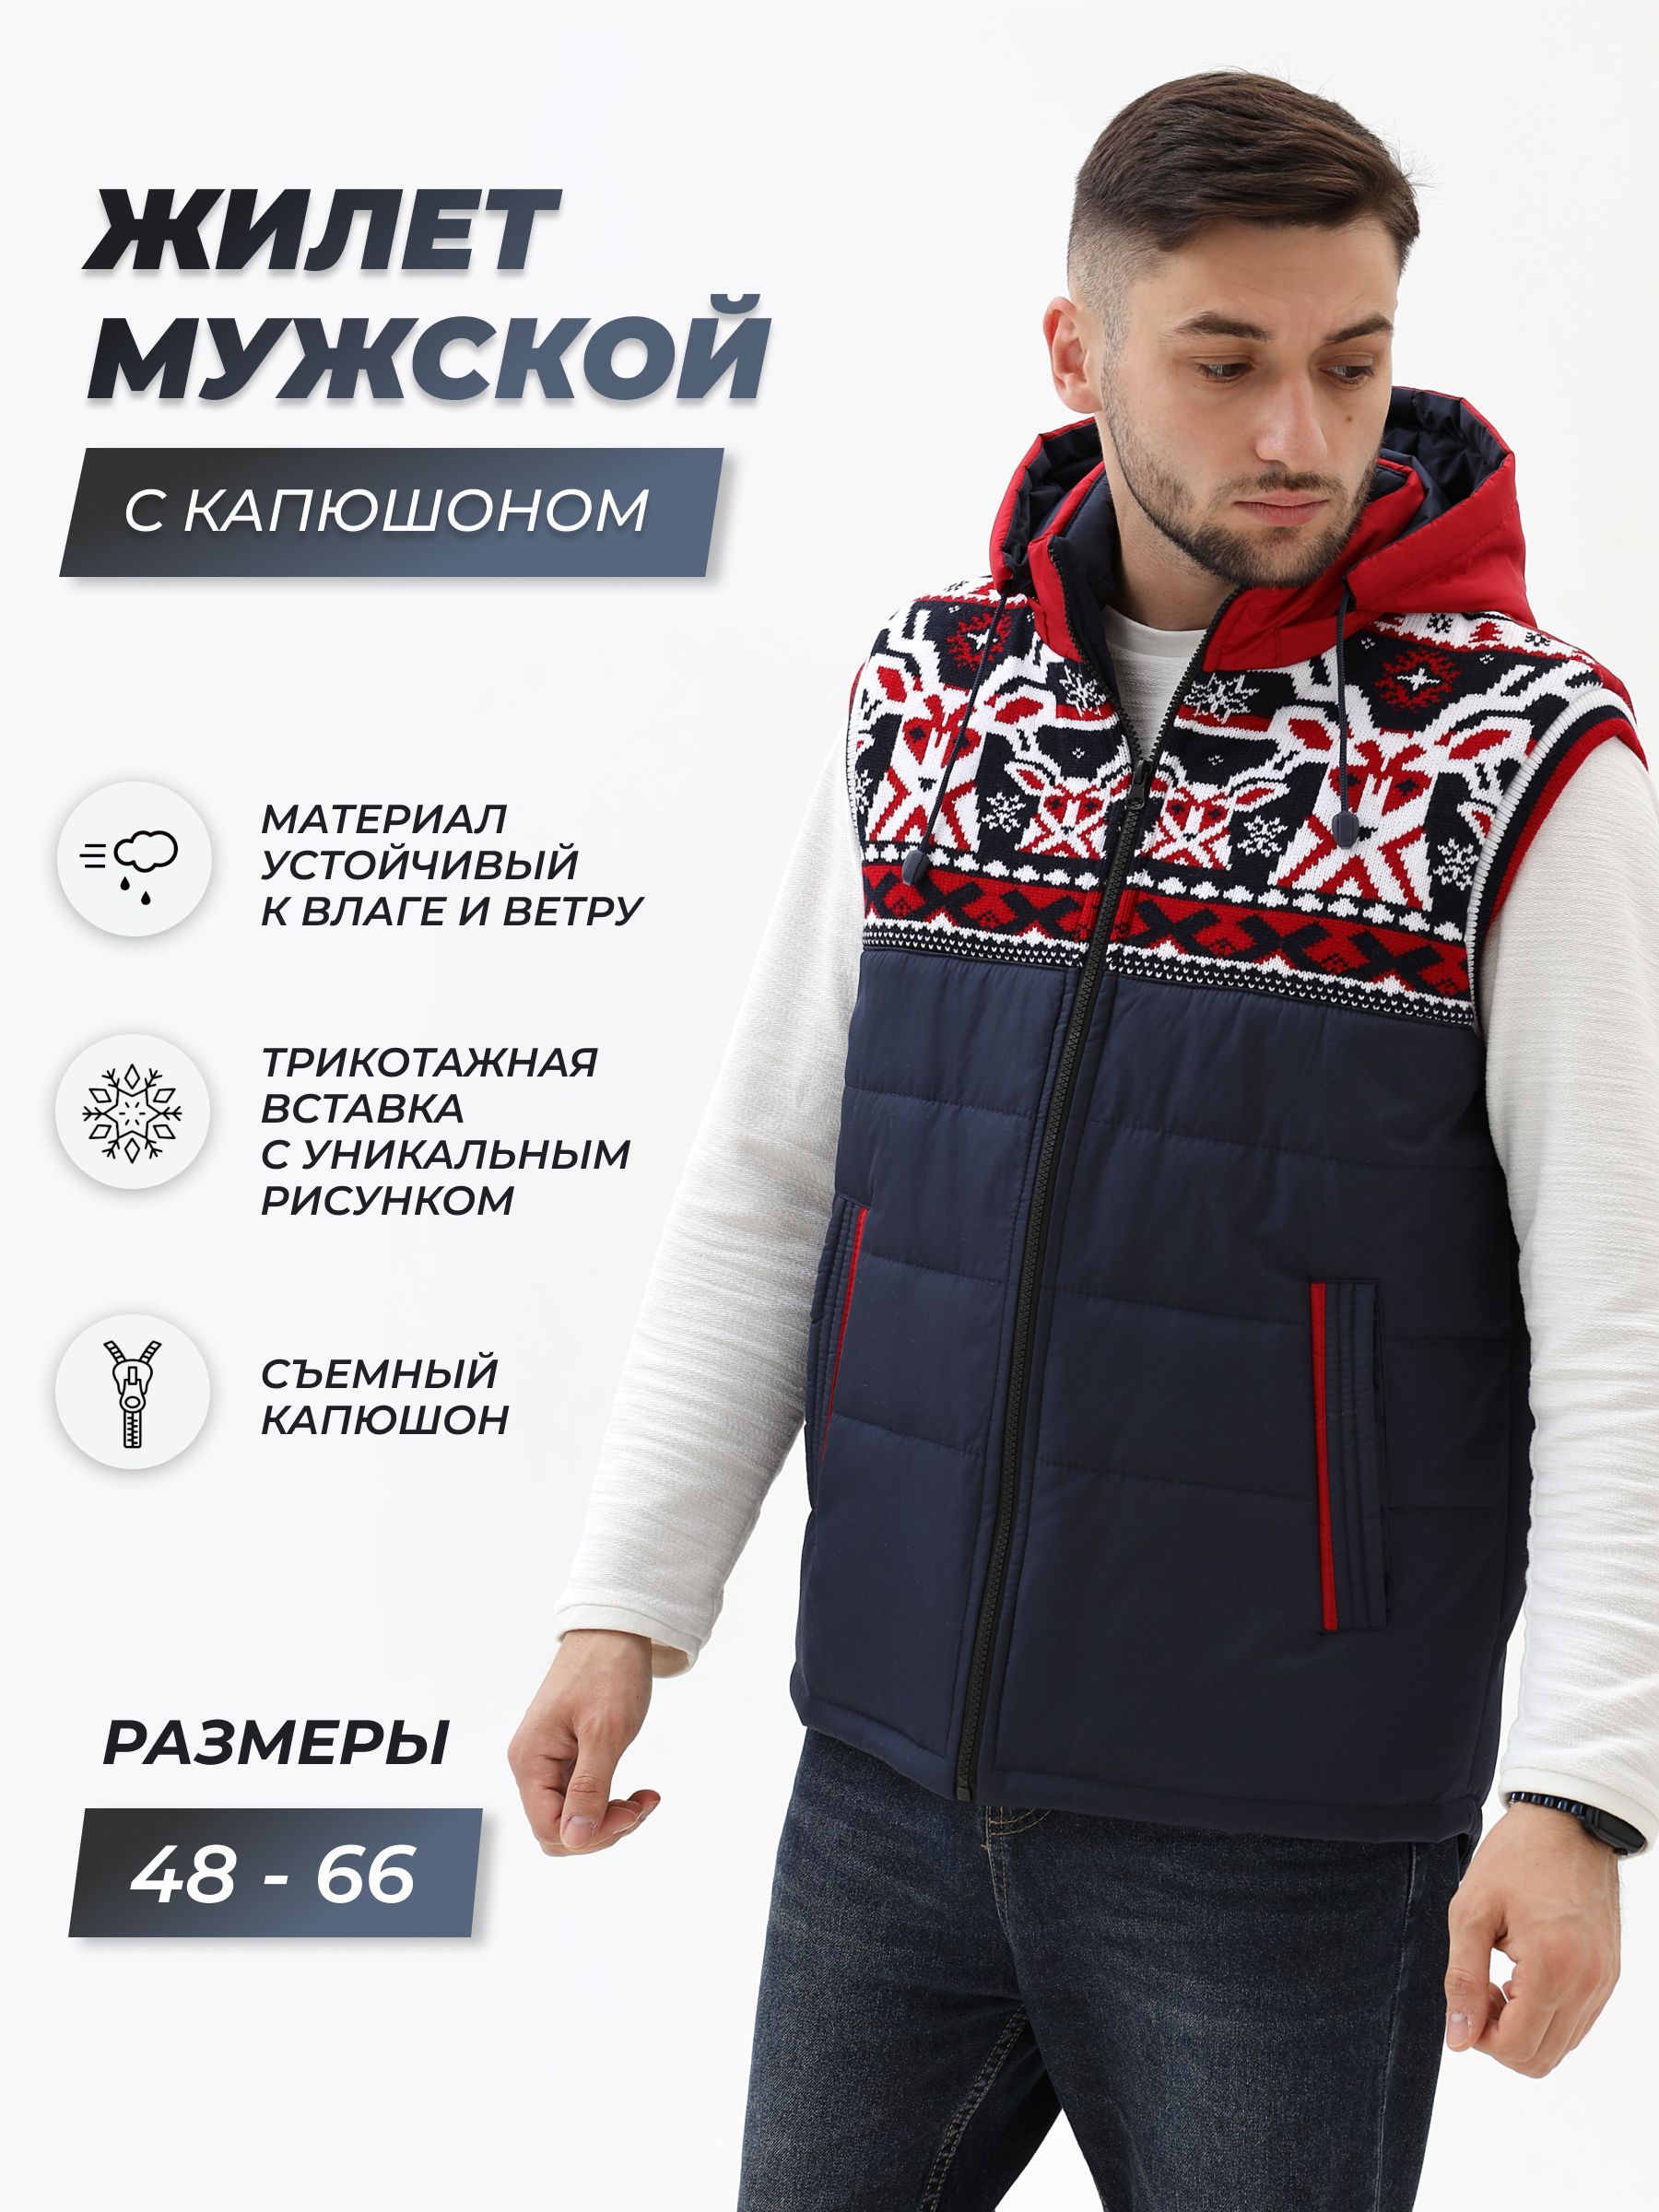 Жакеты, кофты, куртки для мужчин | Самый женский портал manikyrsha.ru